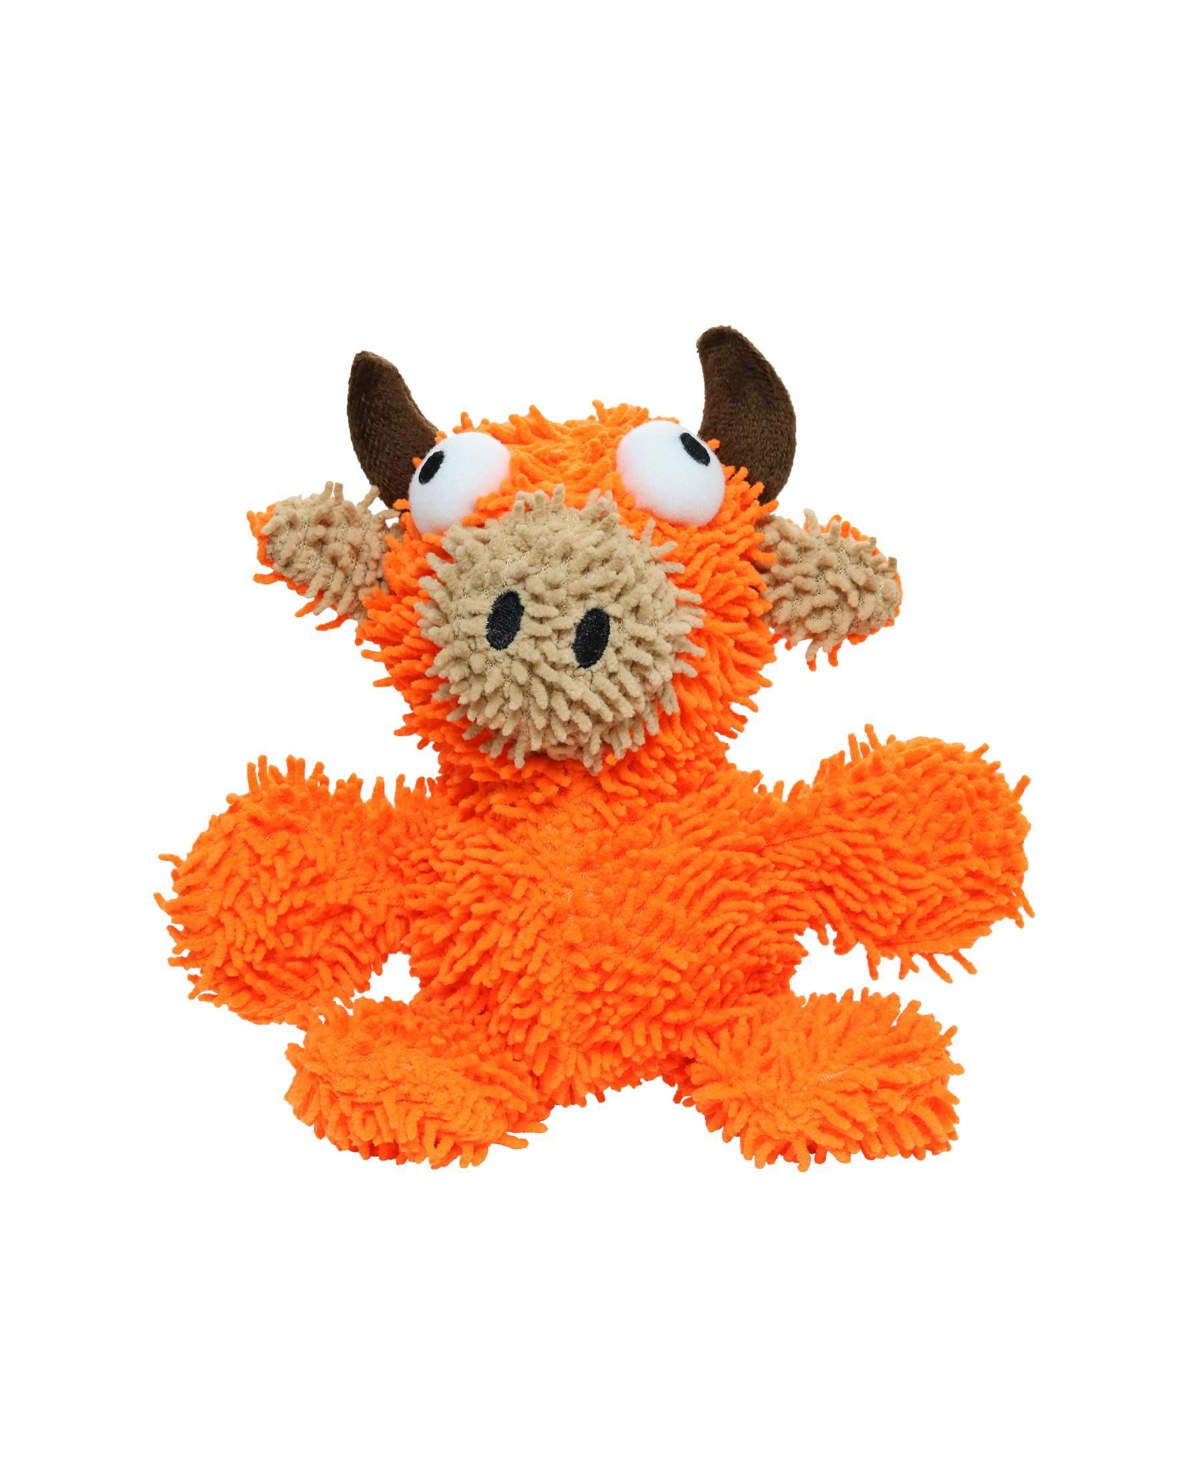 Microfiber Ball Med Bull Orange, Dog Toy - Orange